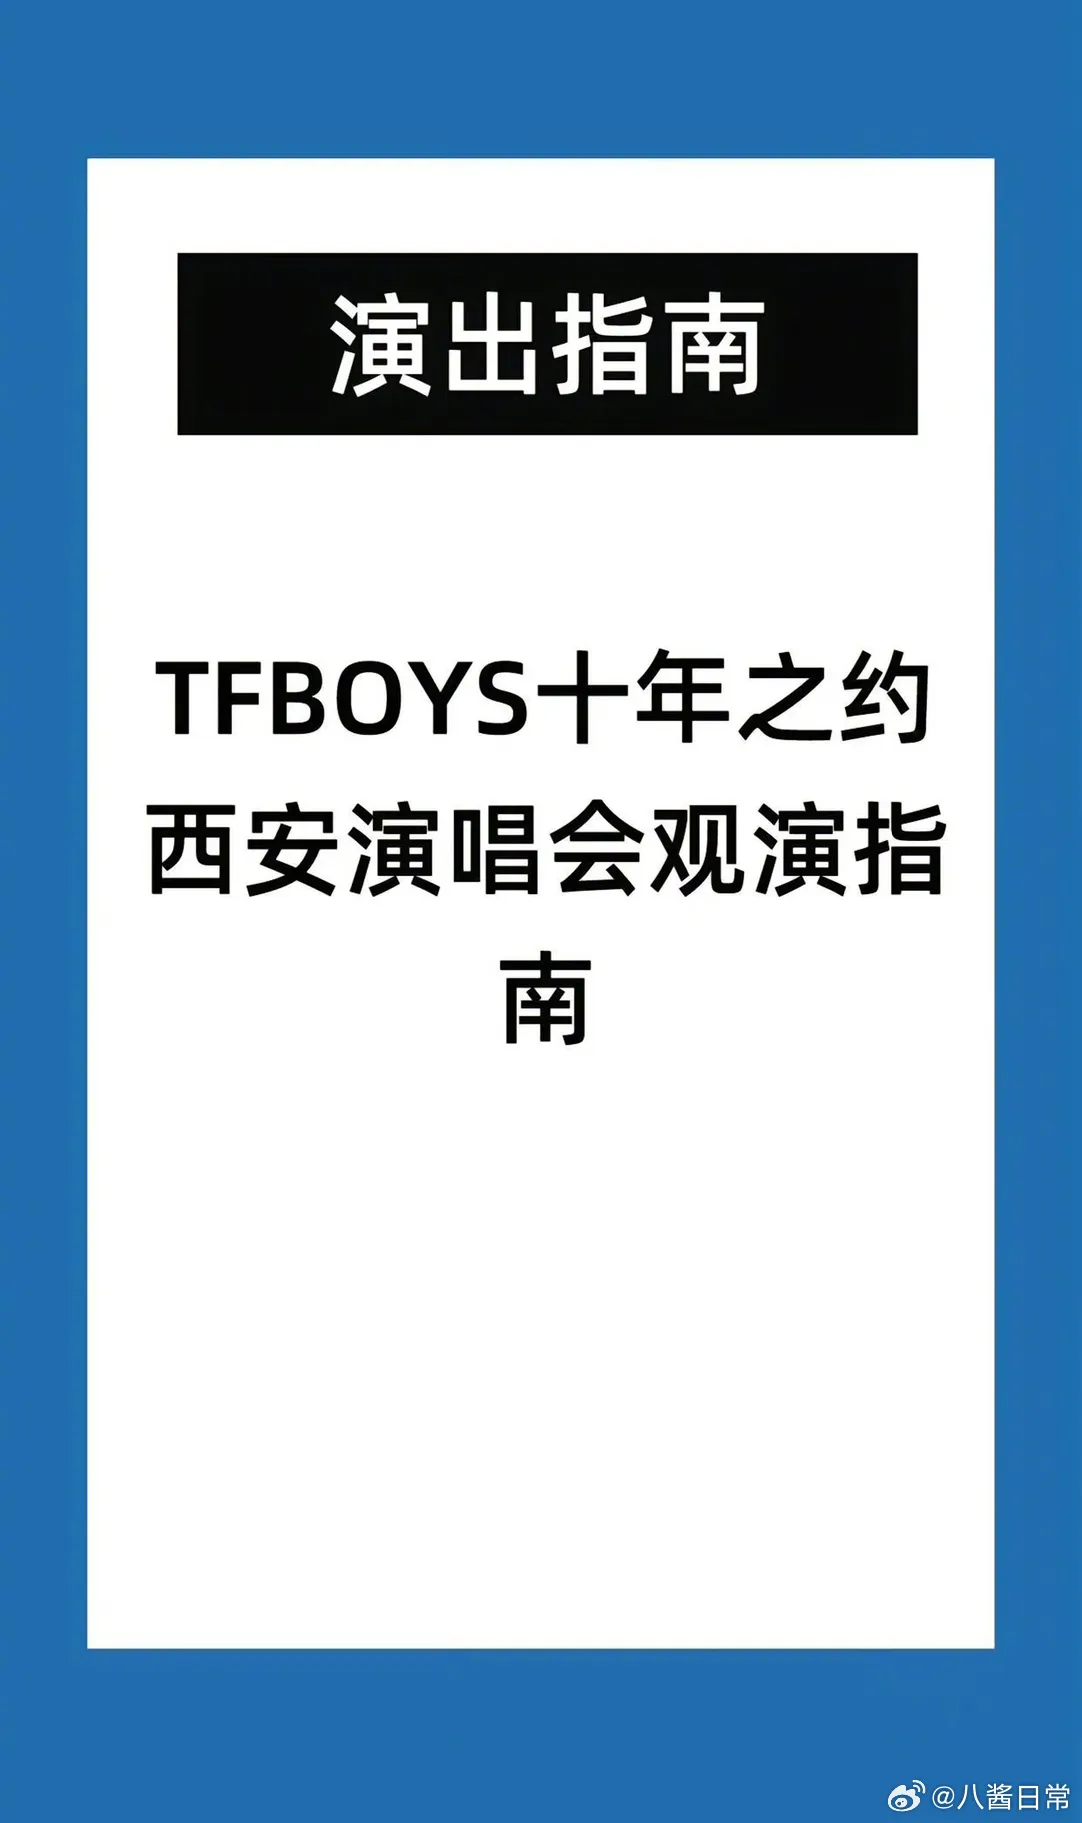 西安发的TFBOYS演唱会观演指南 TFBOYS十周年演唱会地点时间